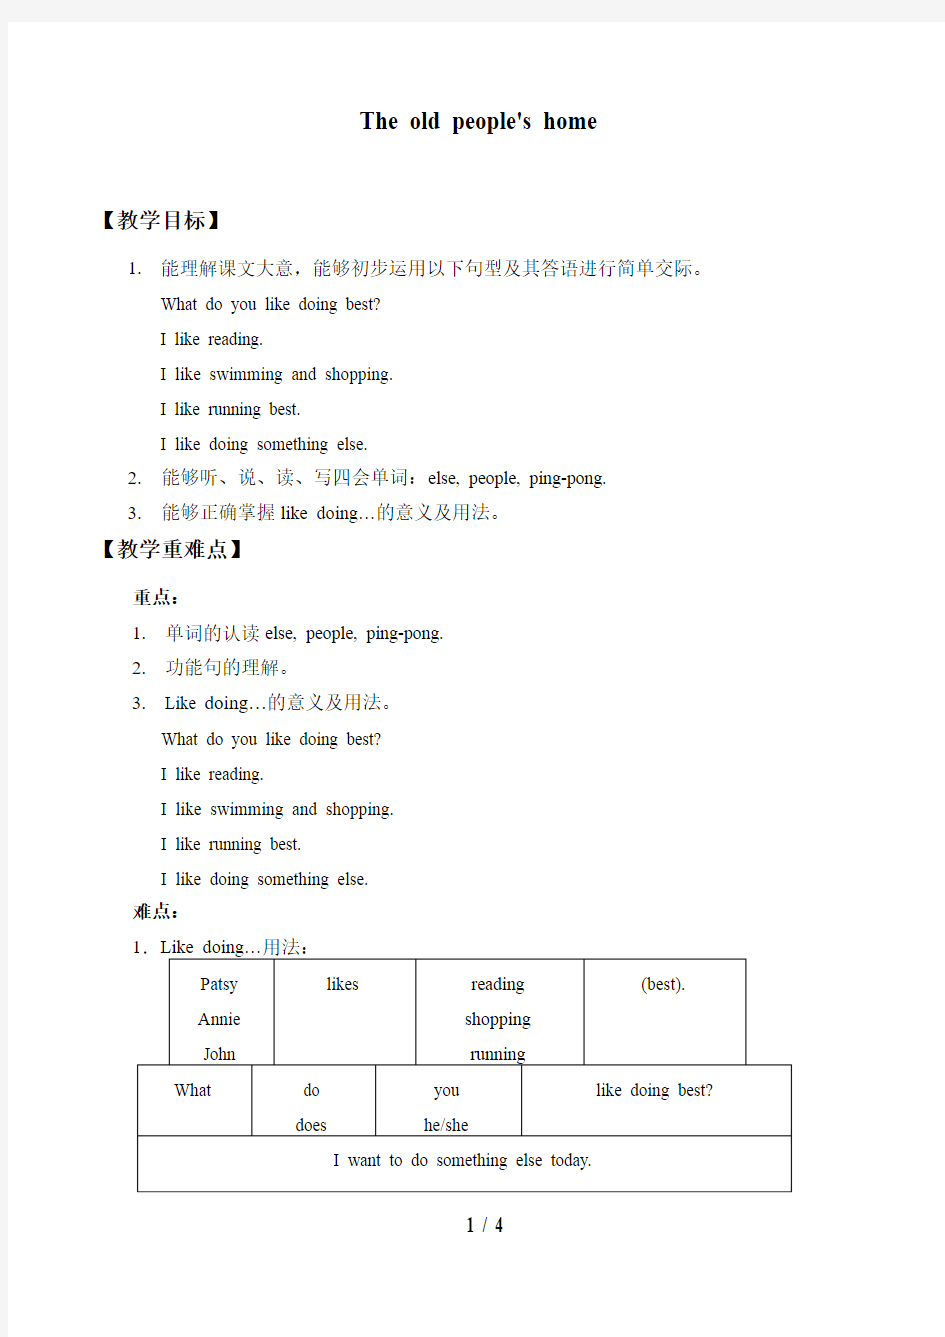 上海外语教育出版社小学五年级英语全一册教案The old people's home